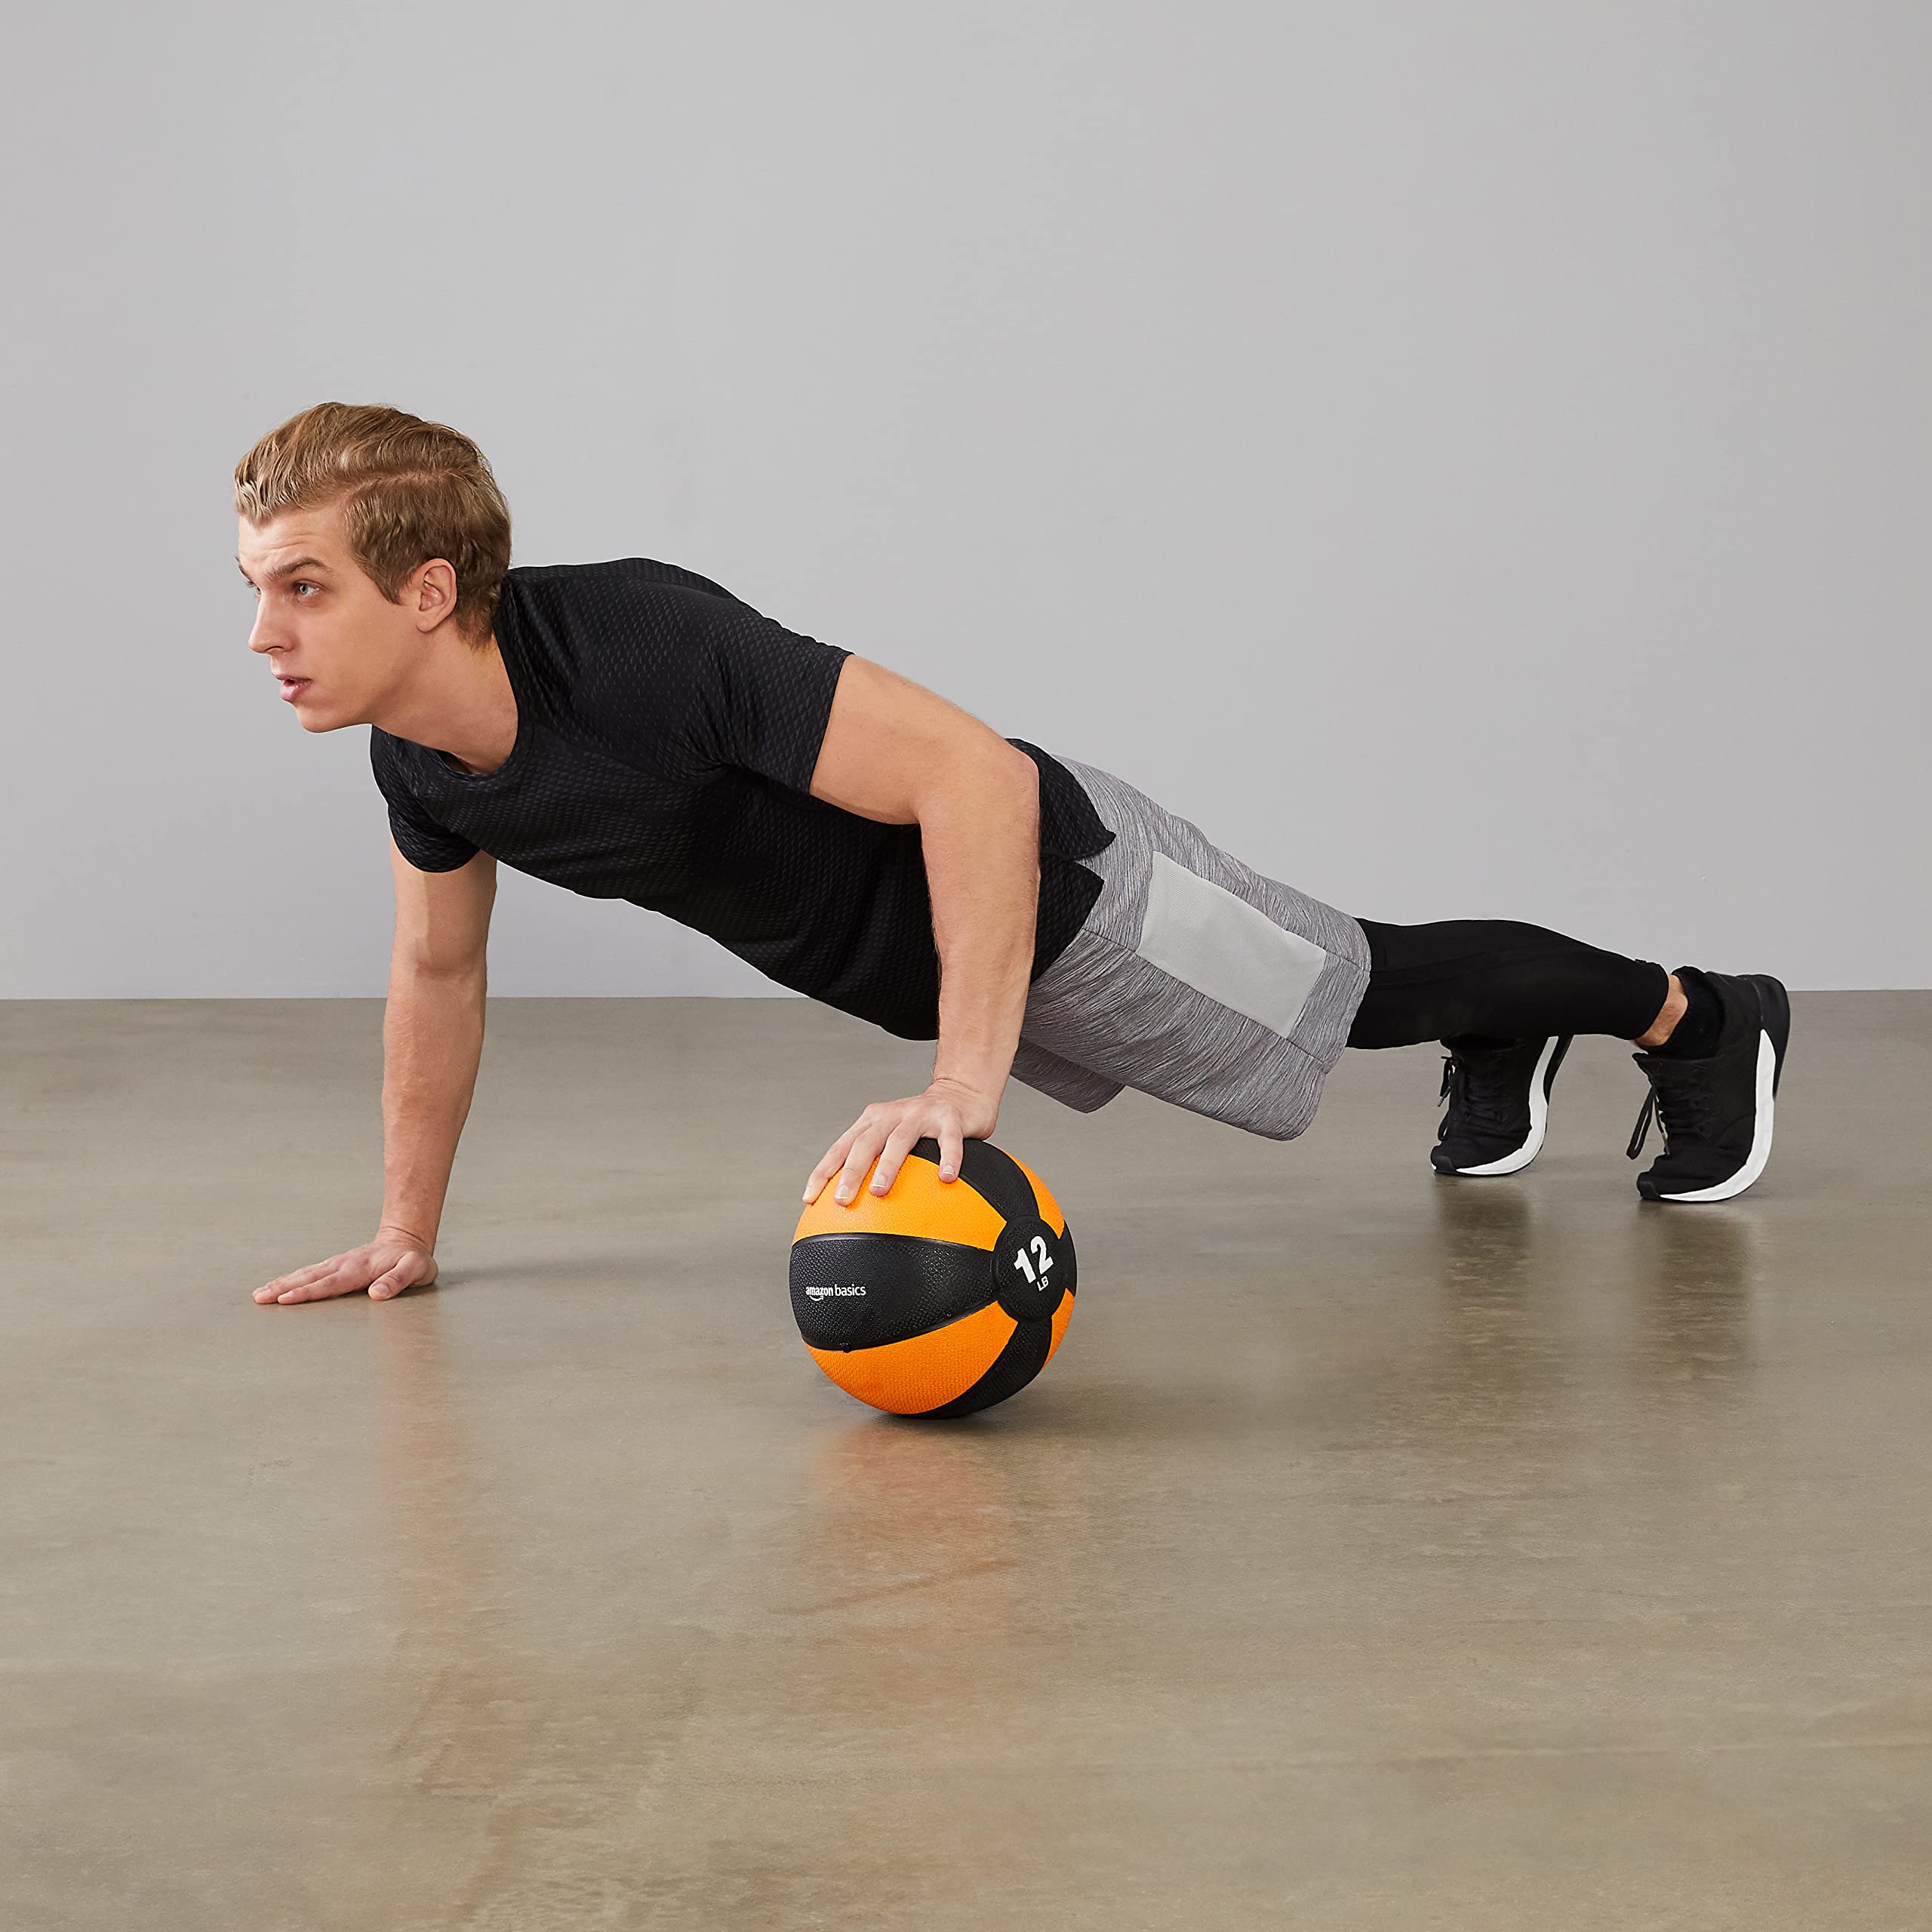 Amazon Basics Medicine Ball for Workouts Exercise Balance Training